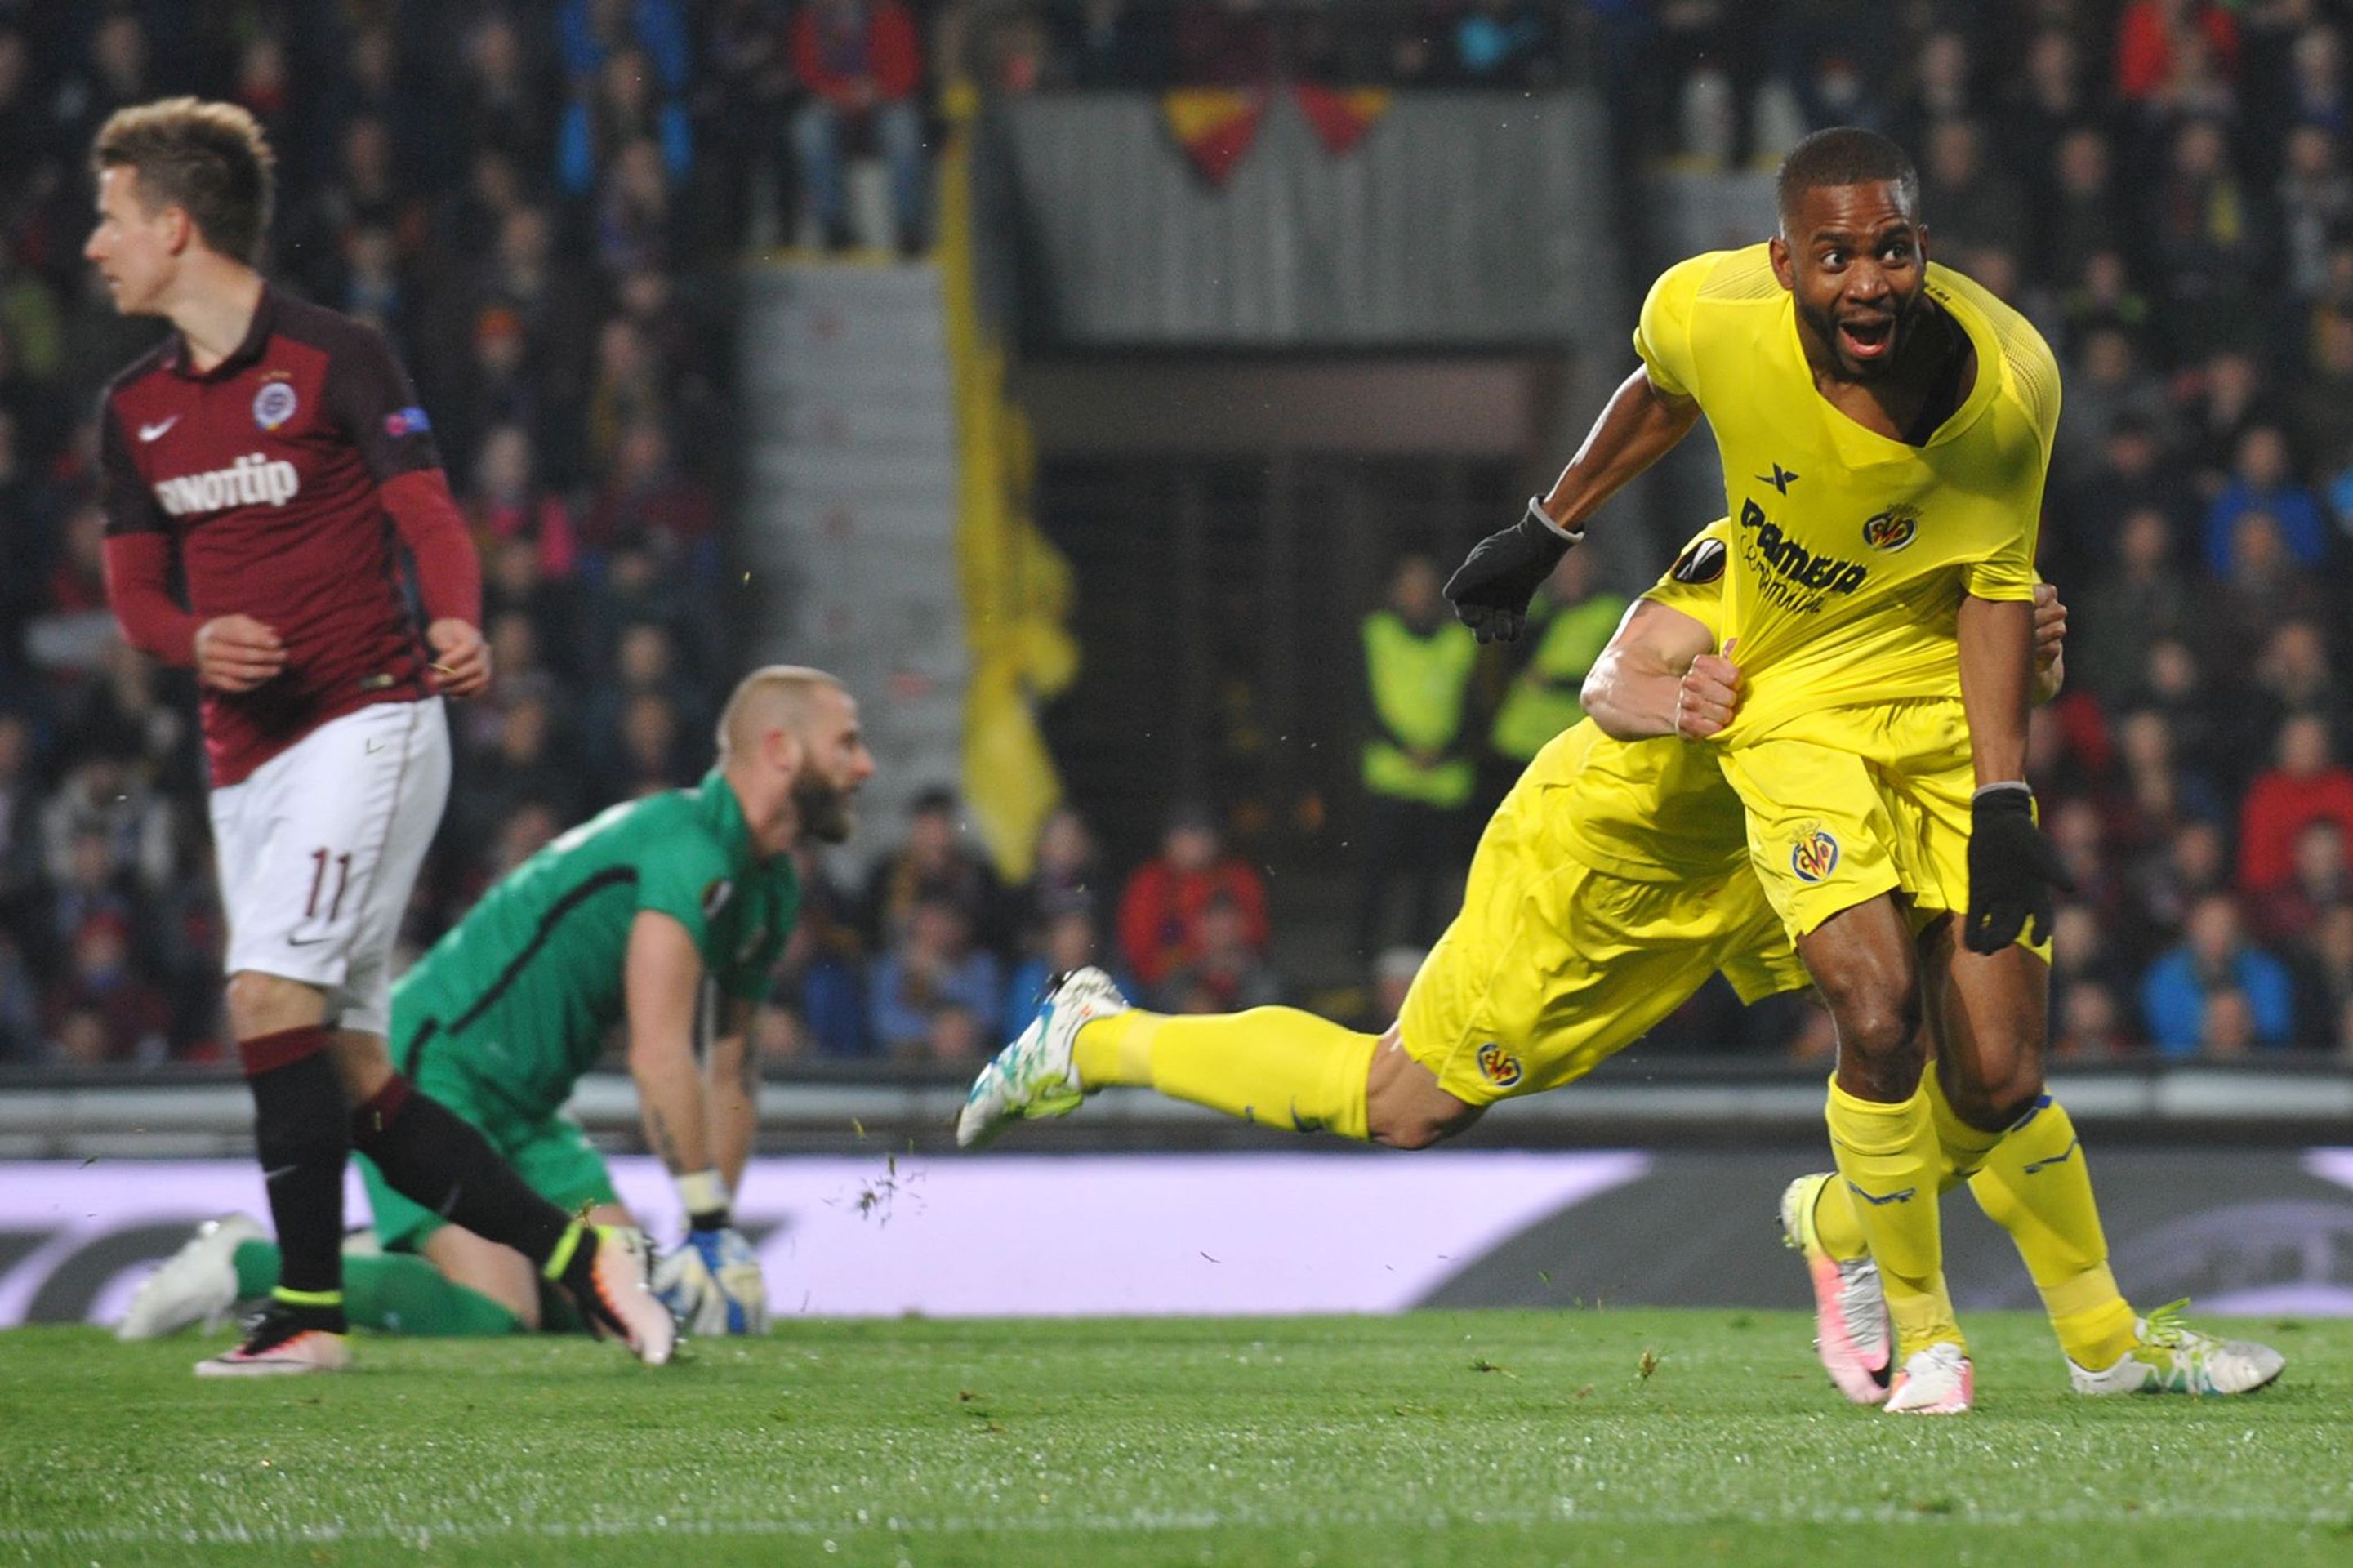 Bakambu otevřel skóre. Sparta - Villareal 0:1 - GALERIE: Sparta Praha - Villarreal 2:4 (1/7)